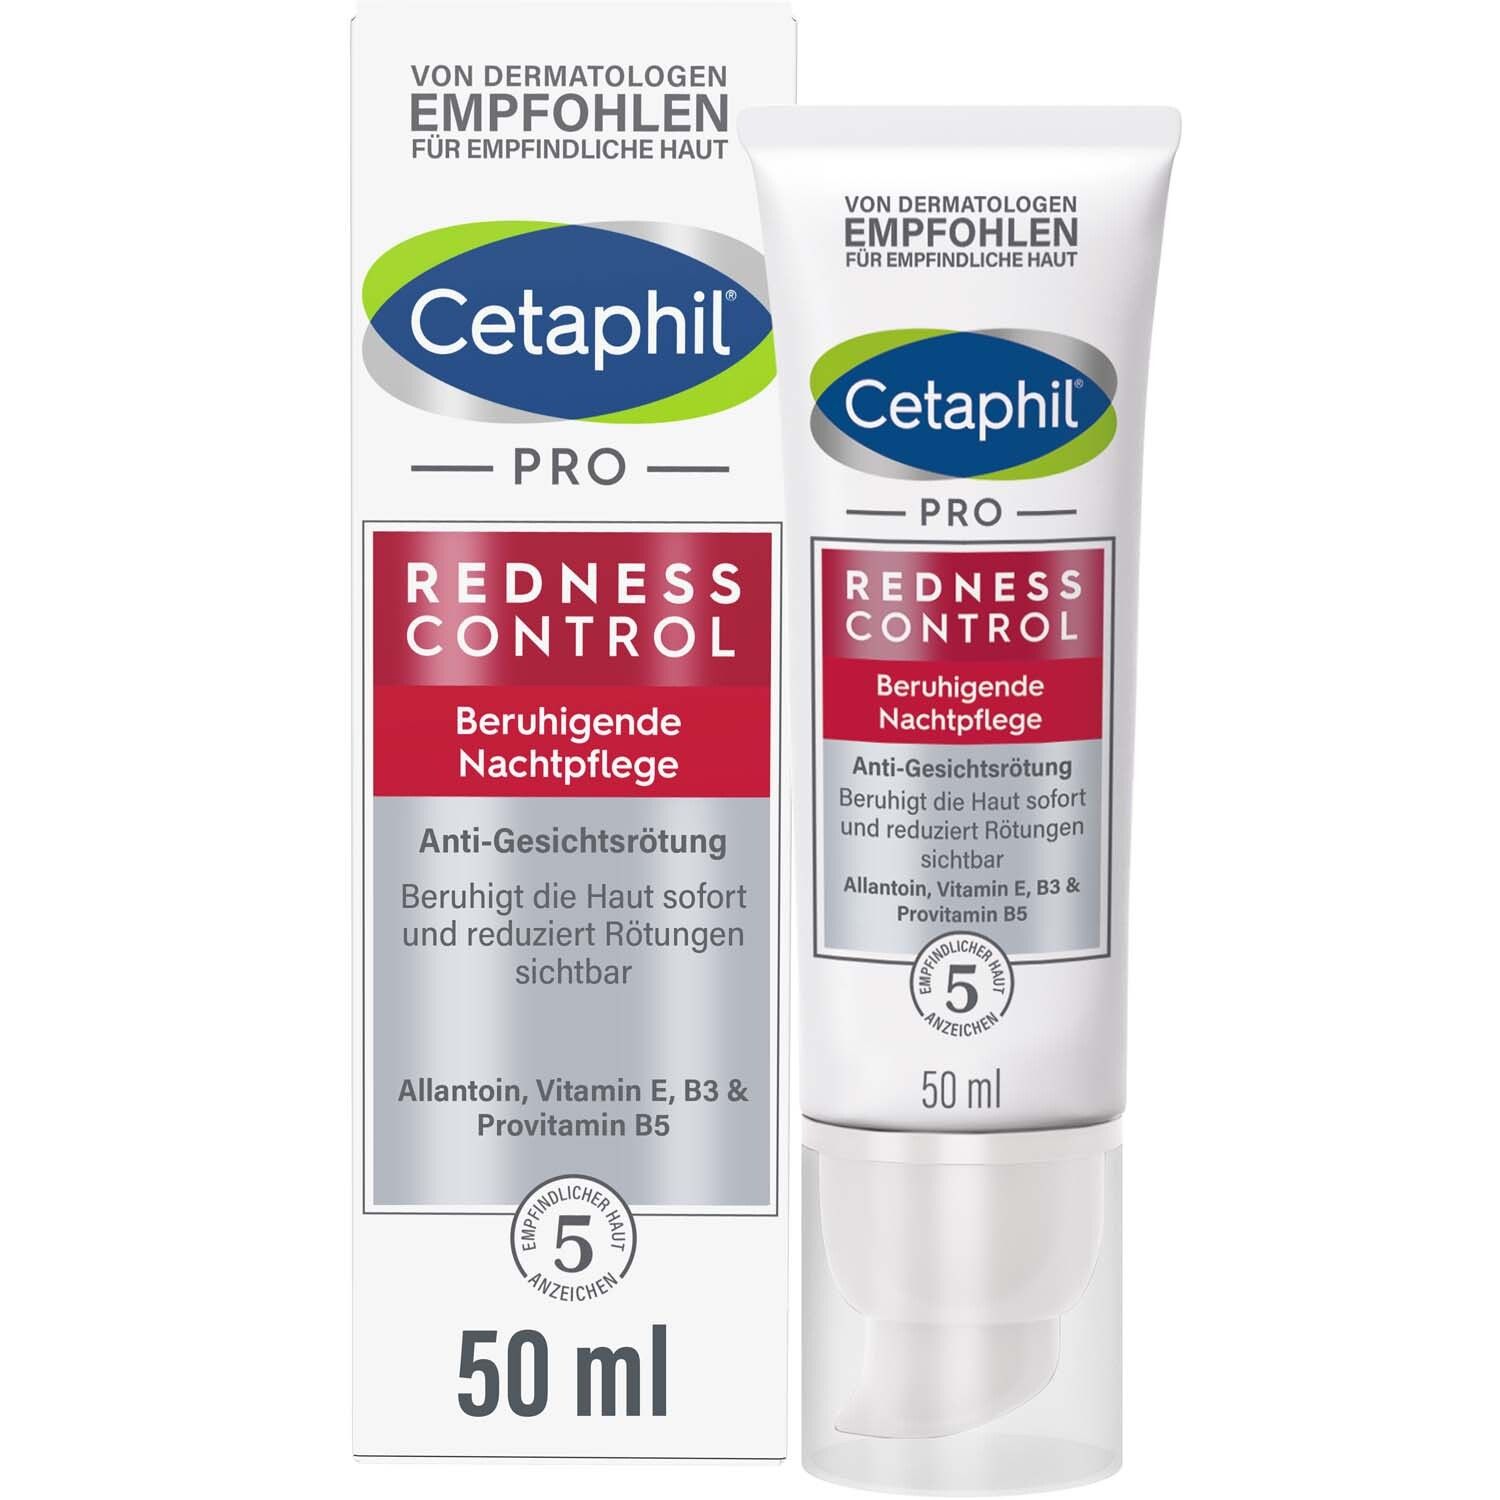 Cetaphil® RednessControl Beruhigende Nachtpflege